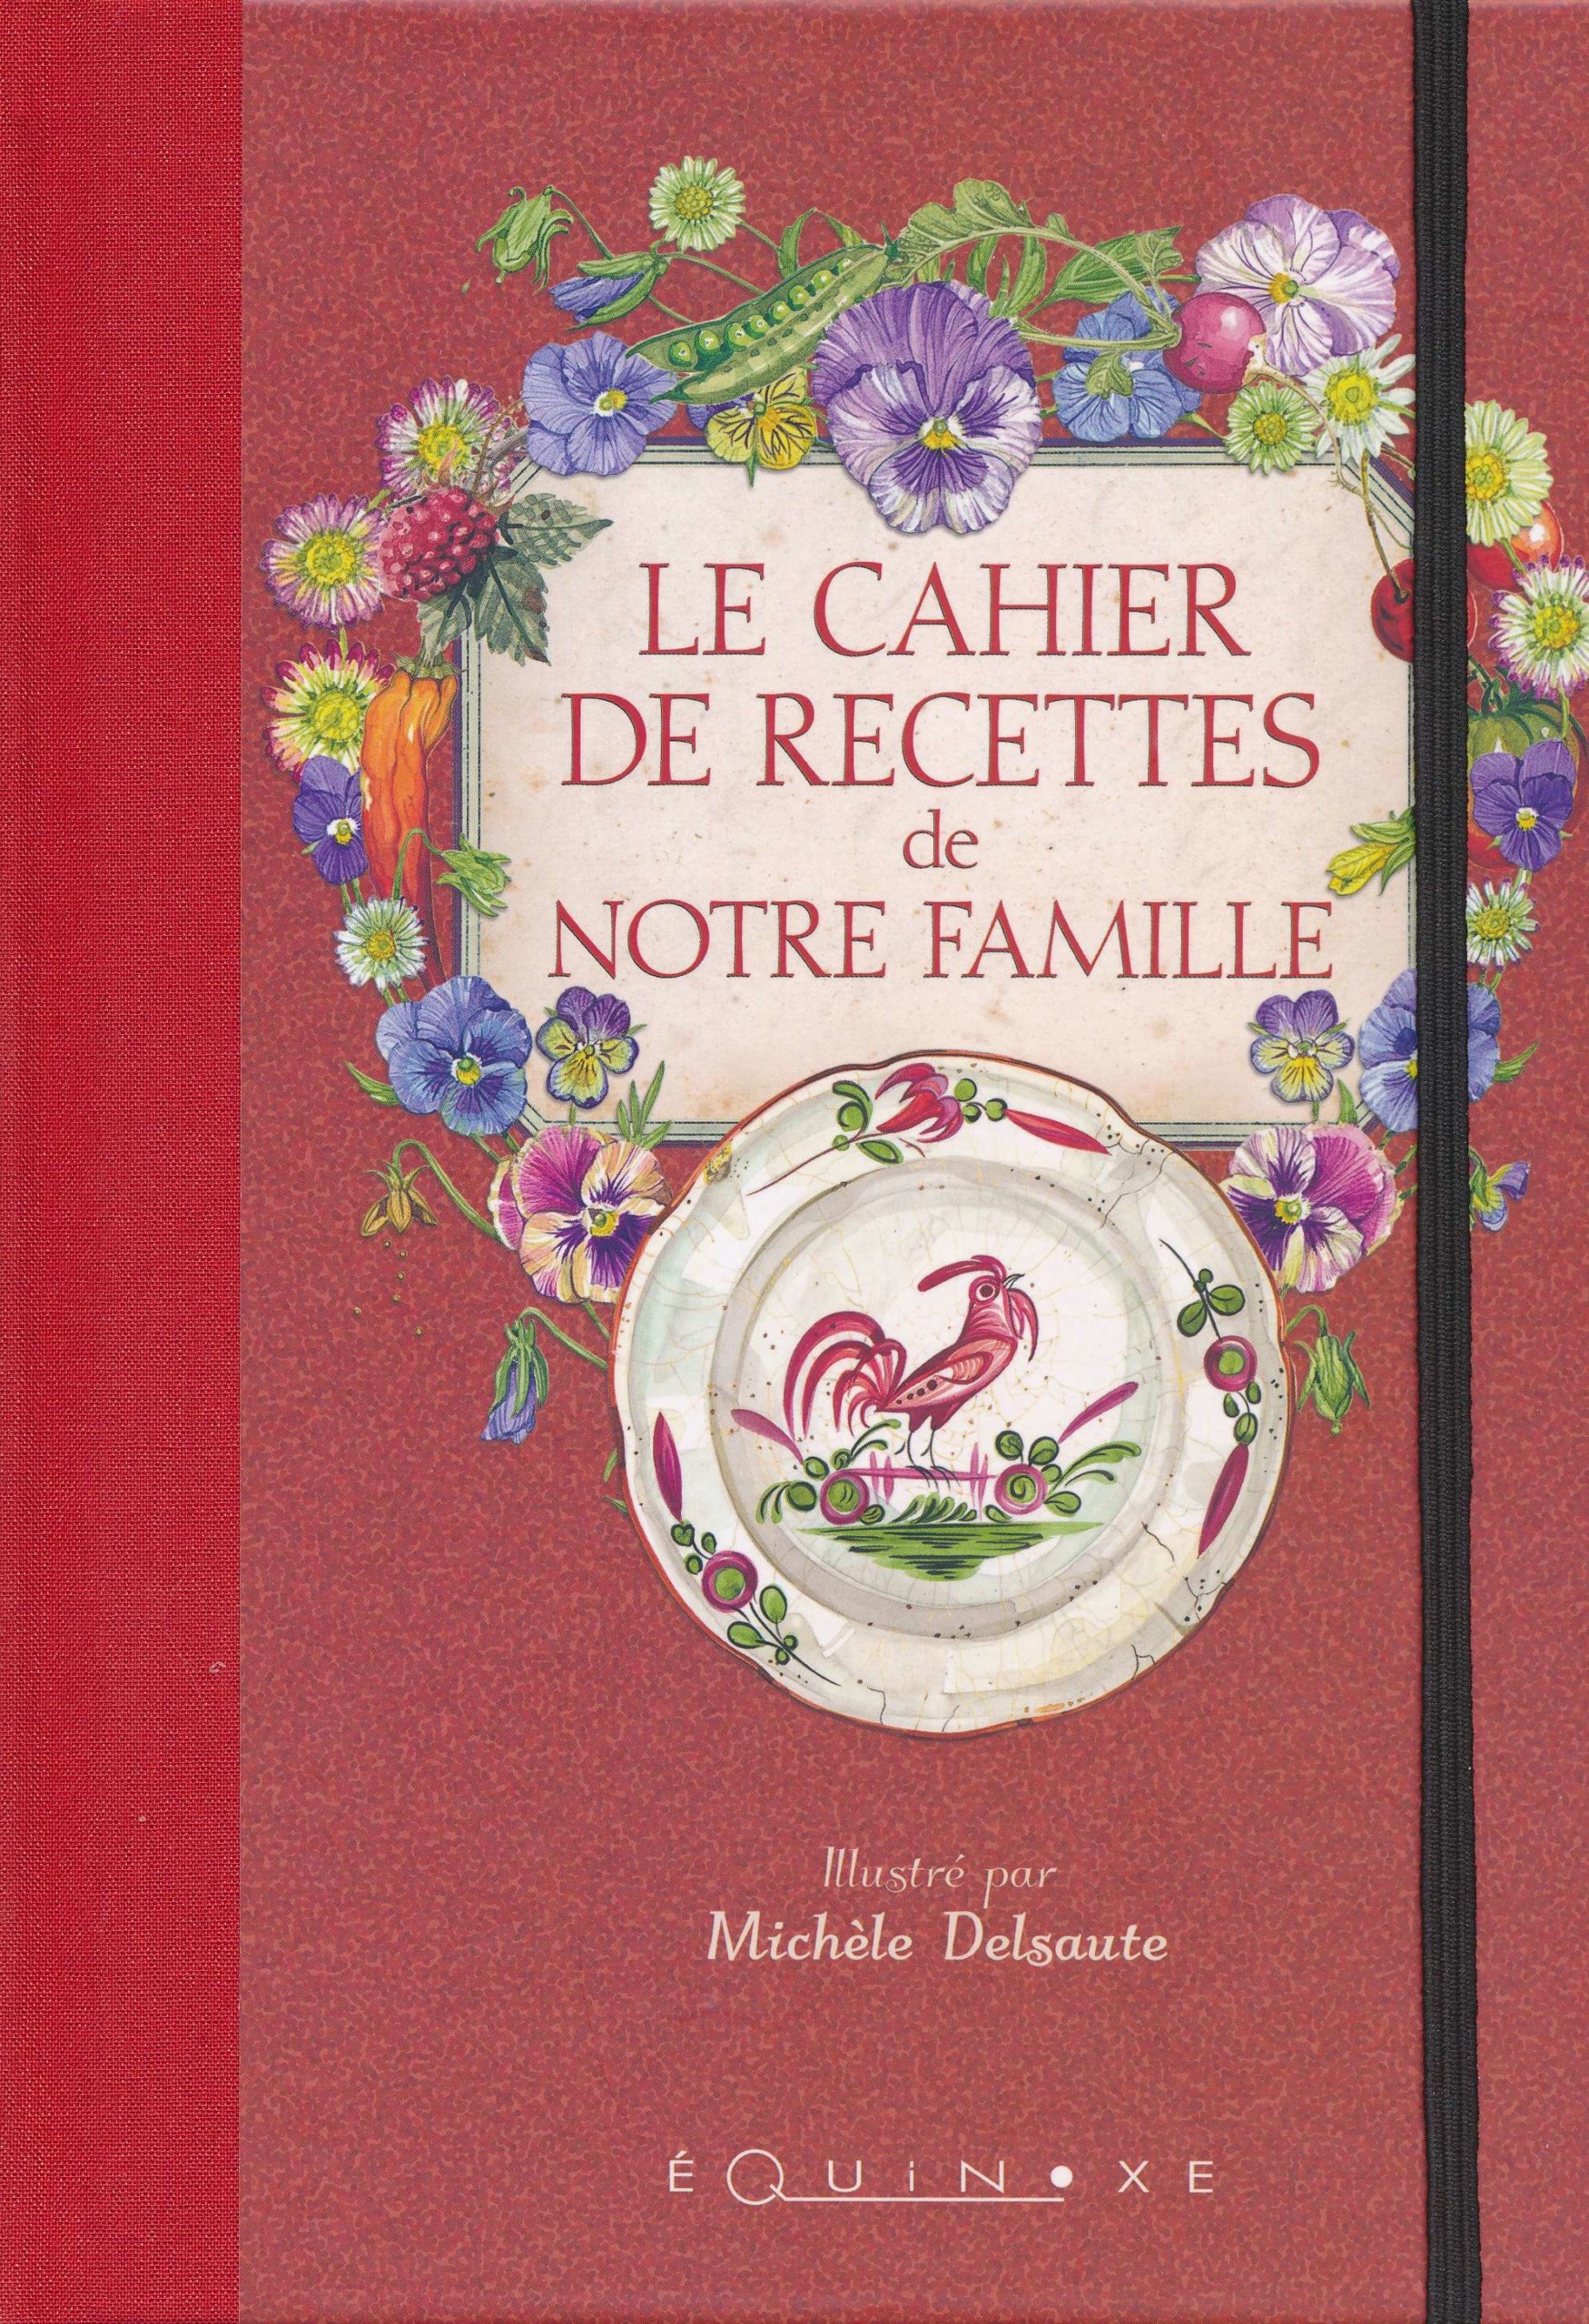 Le Cahier de recettes de notre famille - 9782841359745 - Editions Equinoxe